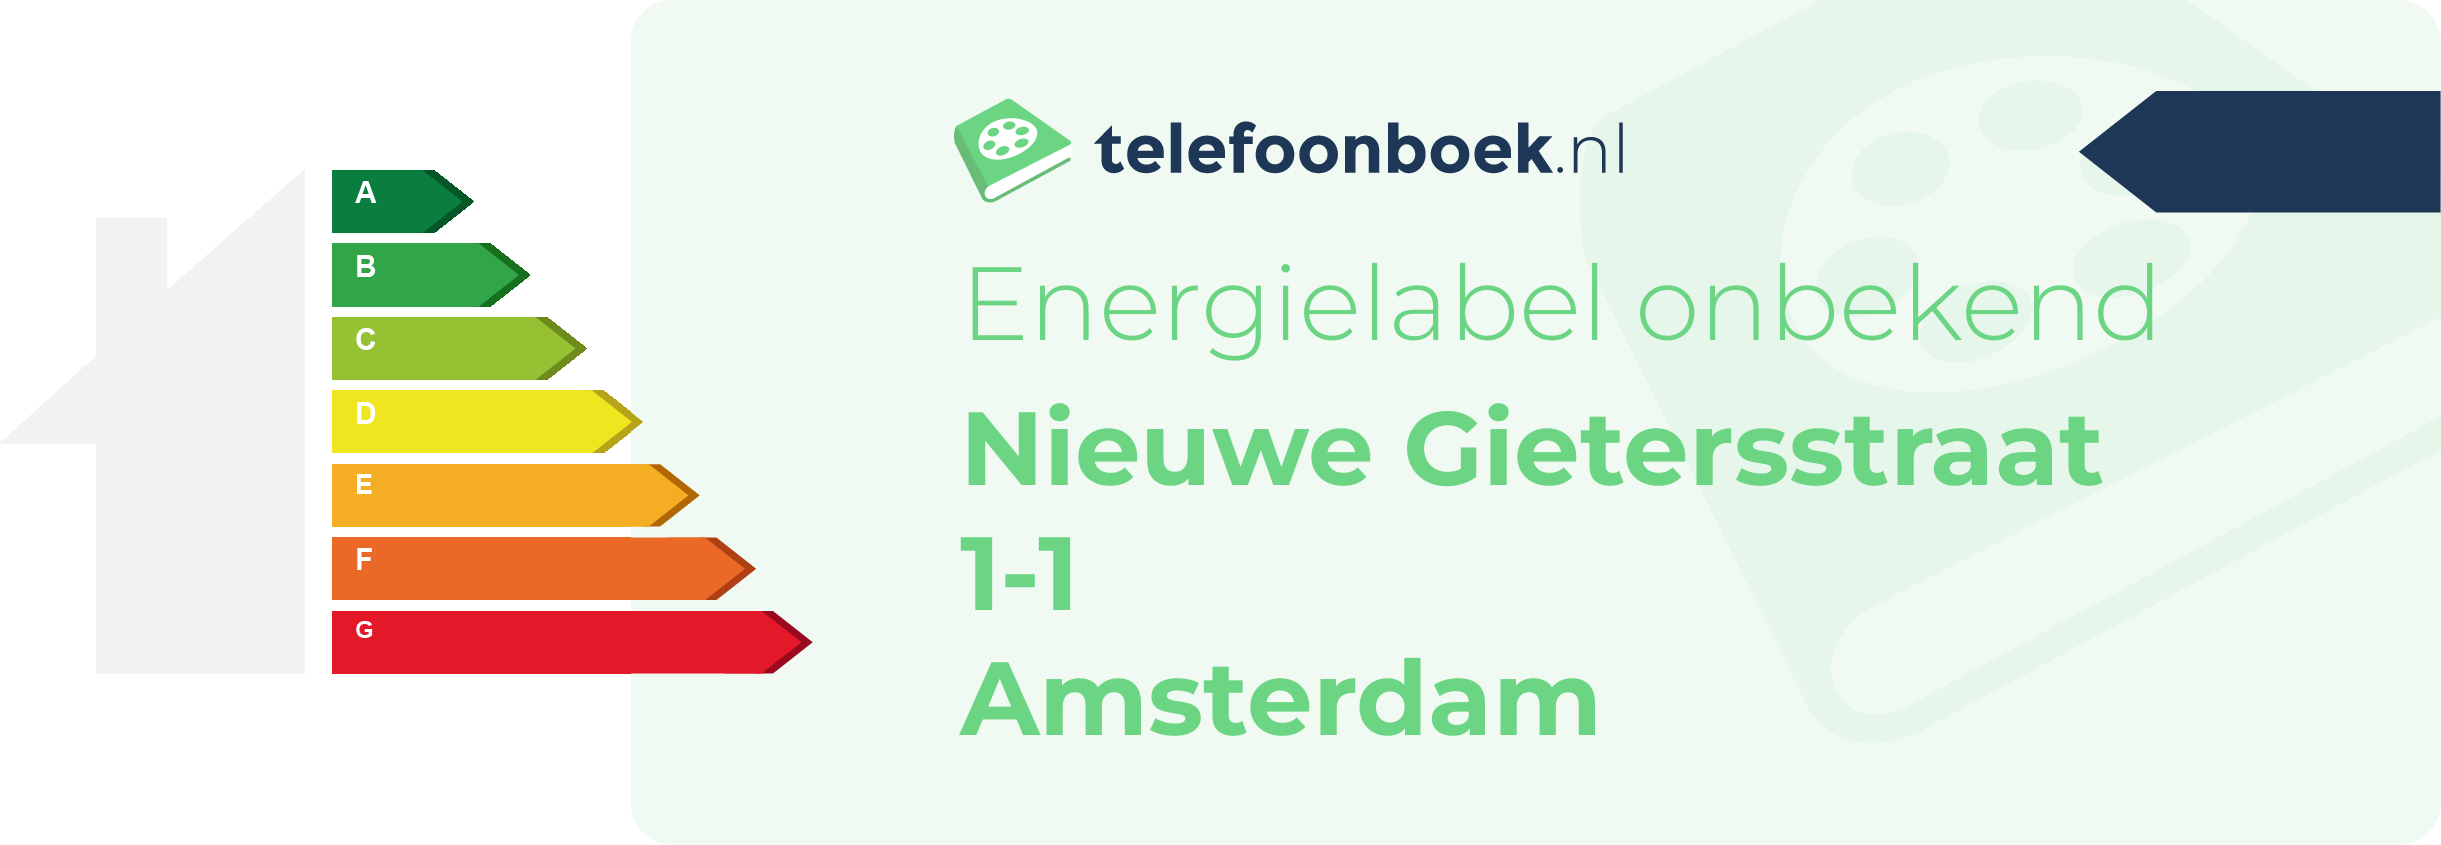 Energielabel Nieuwe Gietersstraat 1-1 Amsterdam